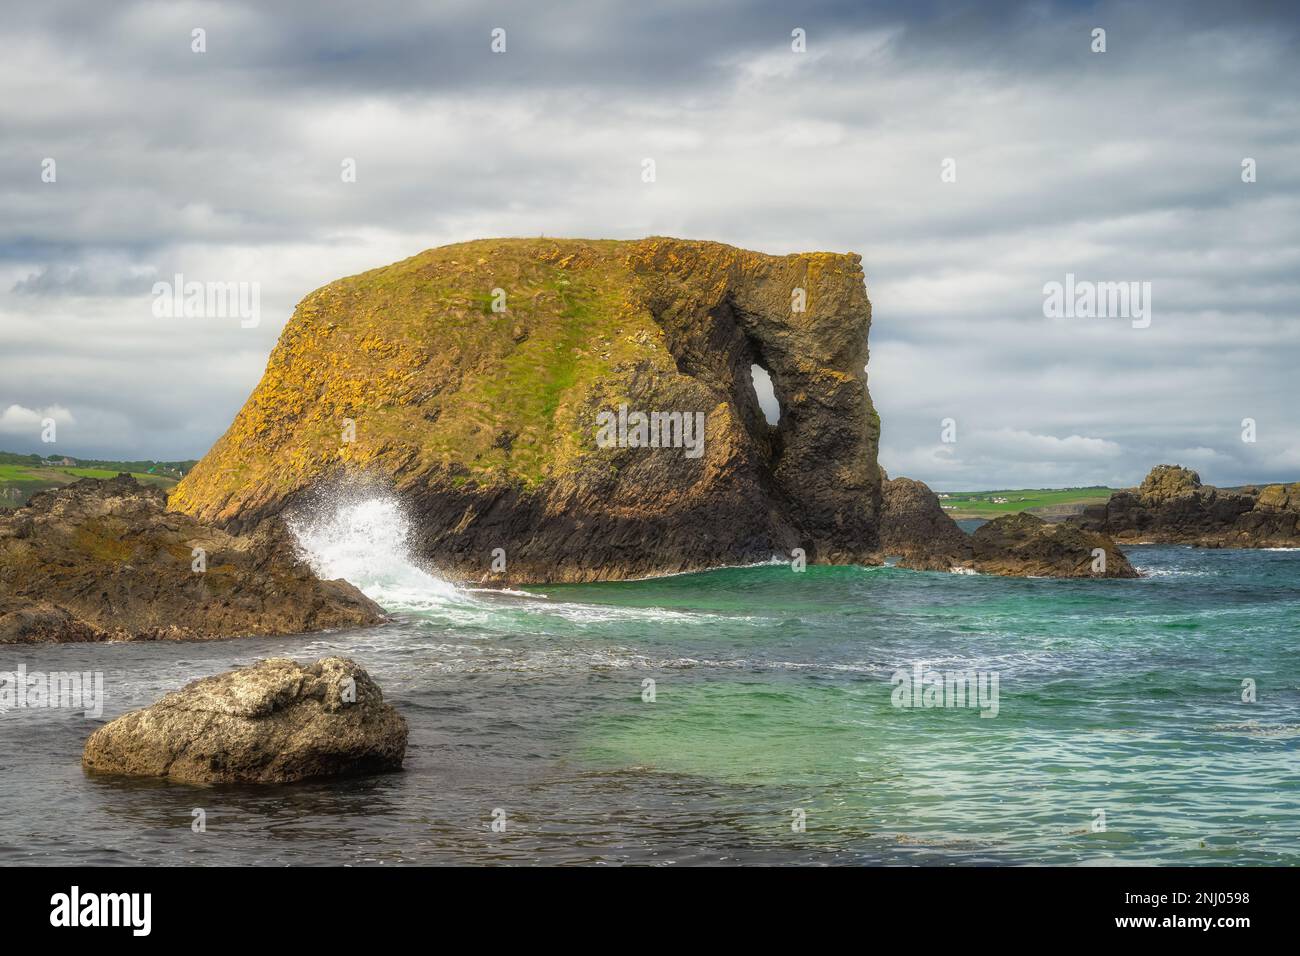 Wunderschöne Küstenfelsformation, Elefantenfelsen mit planschenden Wellen und türkisfarbenem Wasser auf einem Wild Atlantic Way in Country Antrim, Nordirland Stockfoto